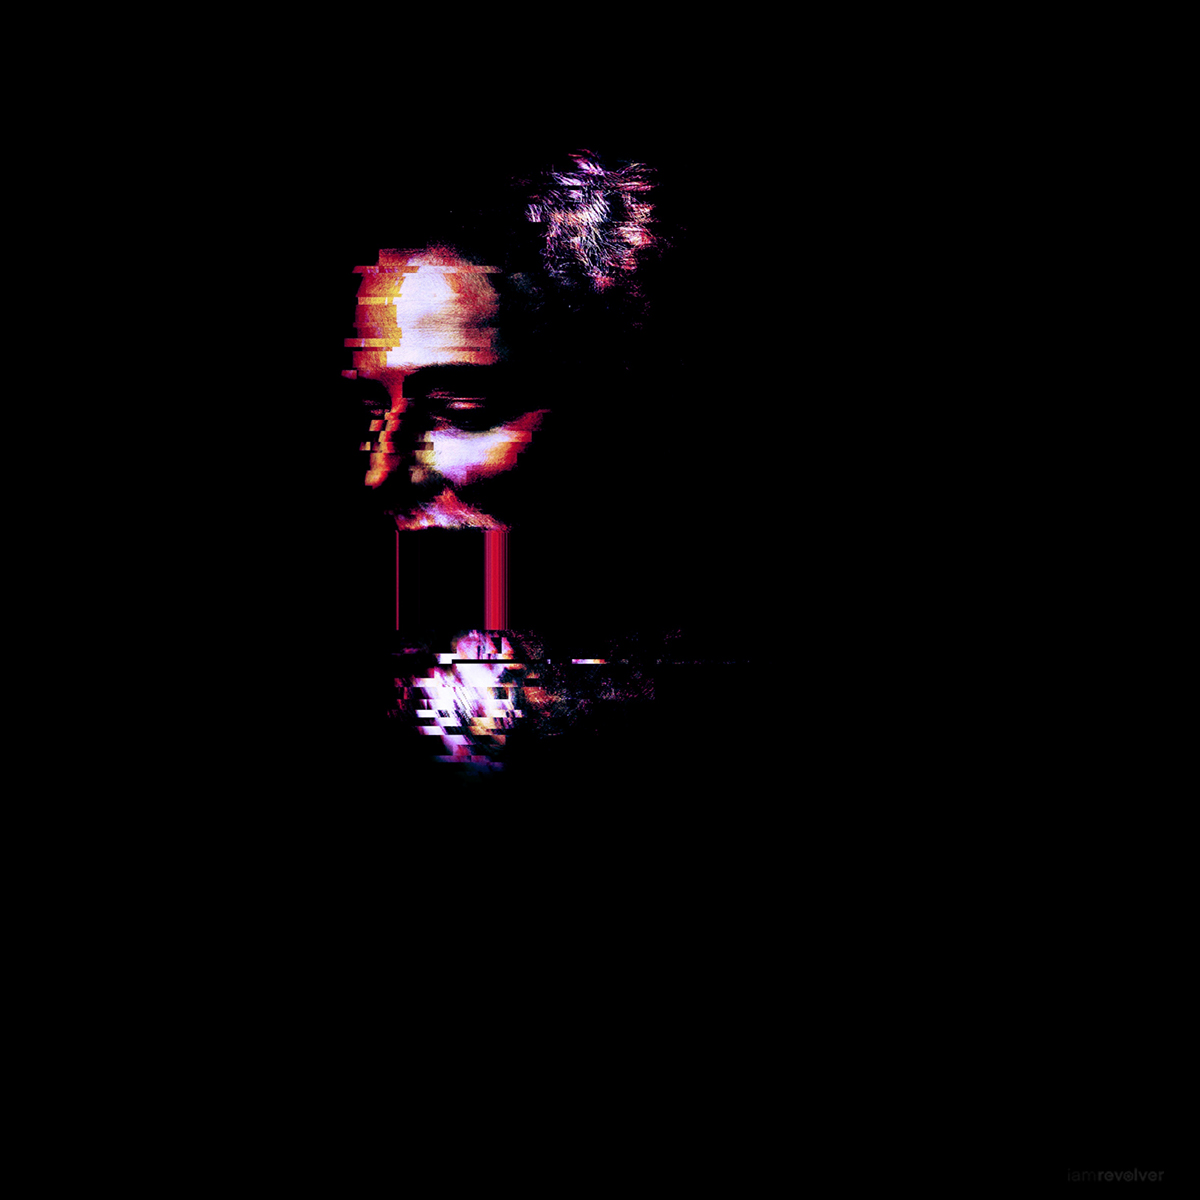 Glitch noir tech distortion portrait dark